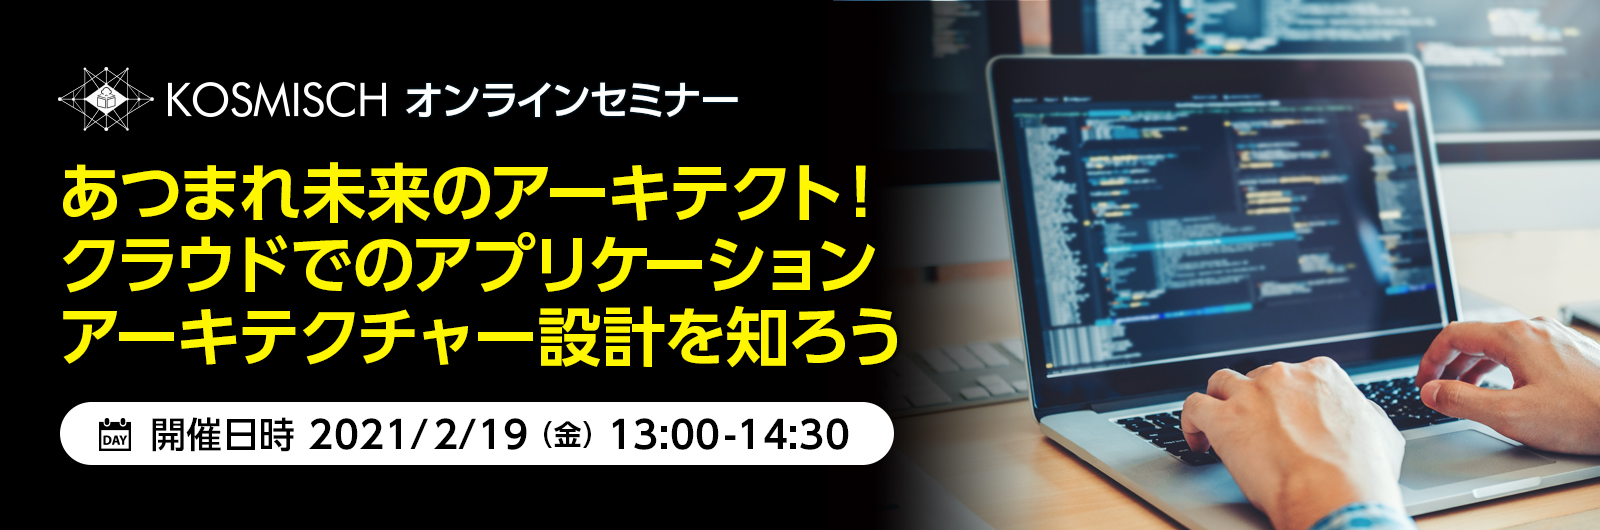 KOSMISCH、クラウドでのアプリケーションアーキテクチャー設計を支援するウェビナーを日本マイクロソフトと共催－2021年2月19日(金)